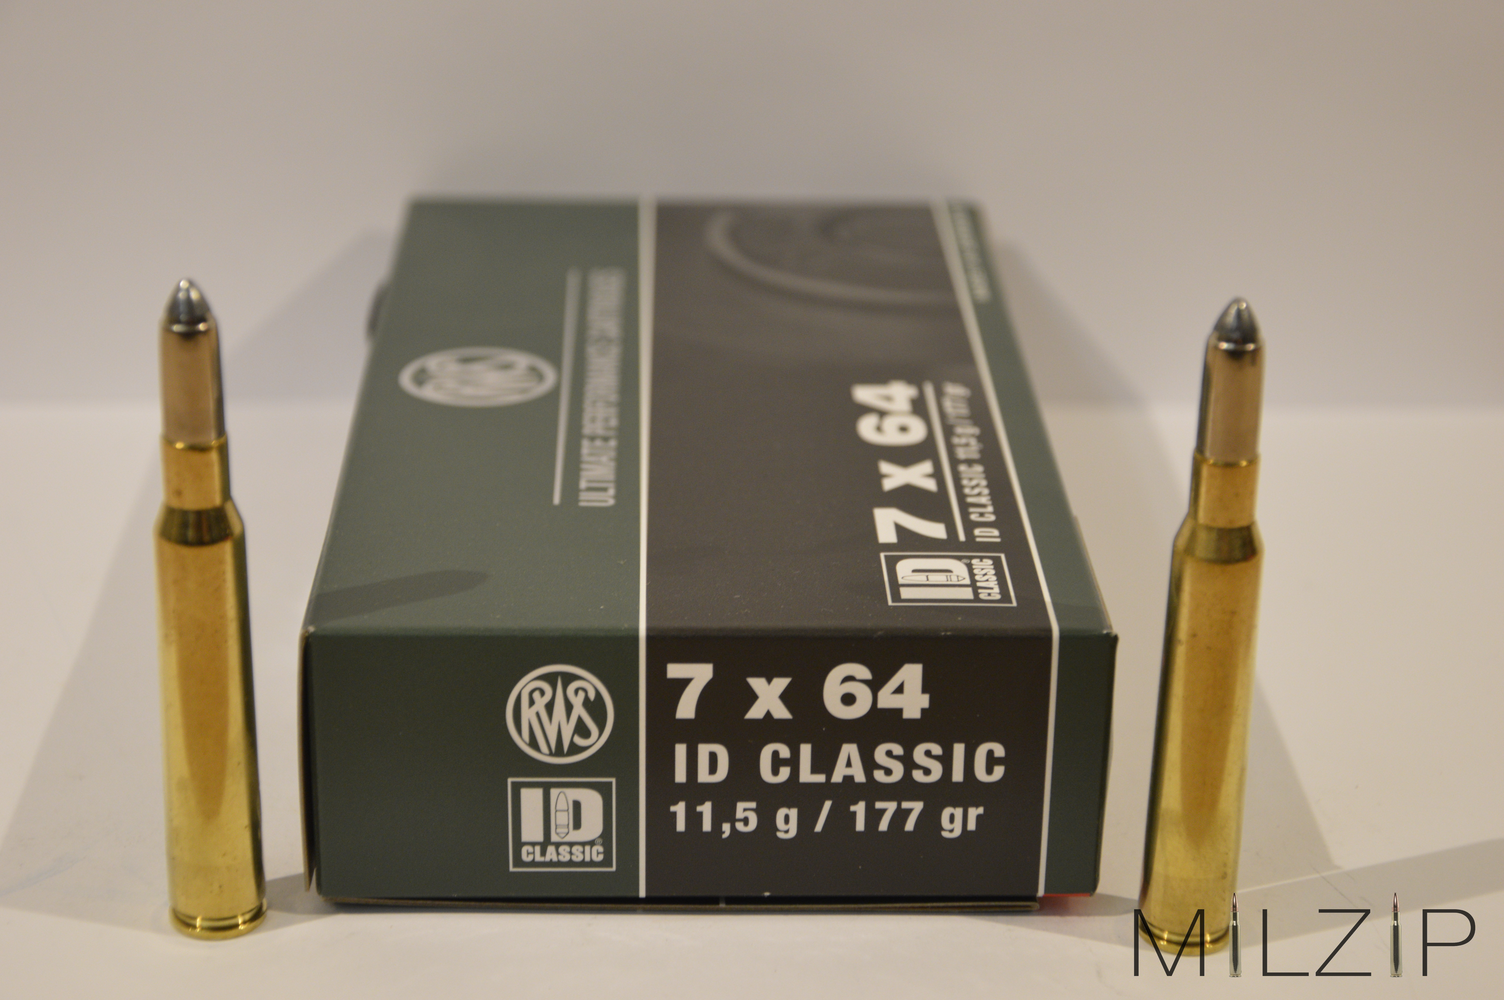 RWS 7x64 11,5g/177grs. ID-Classic